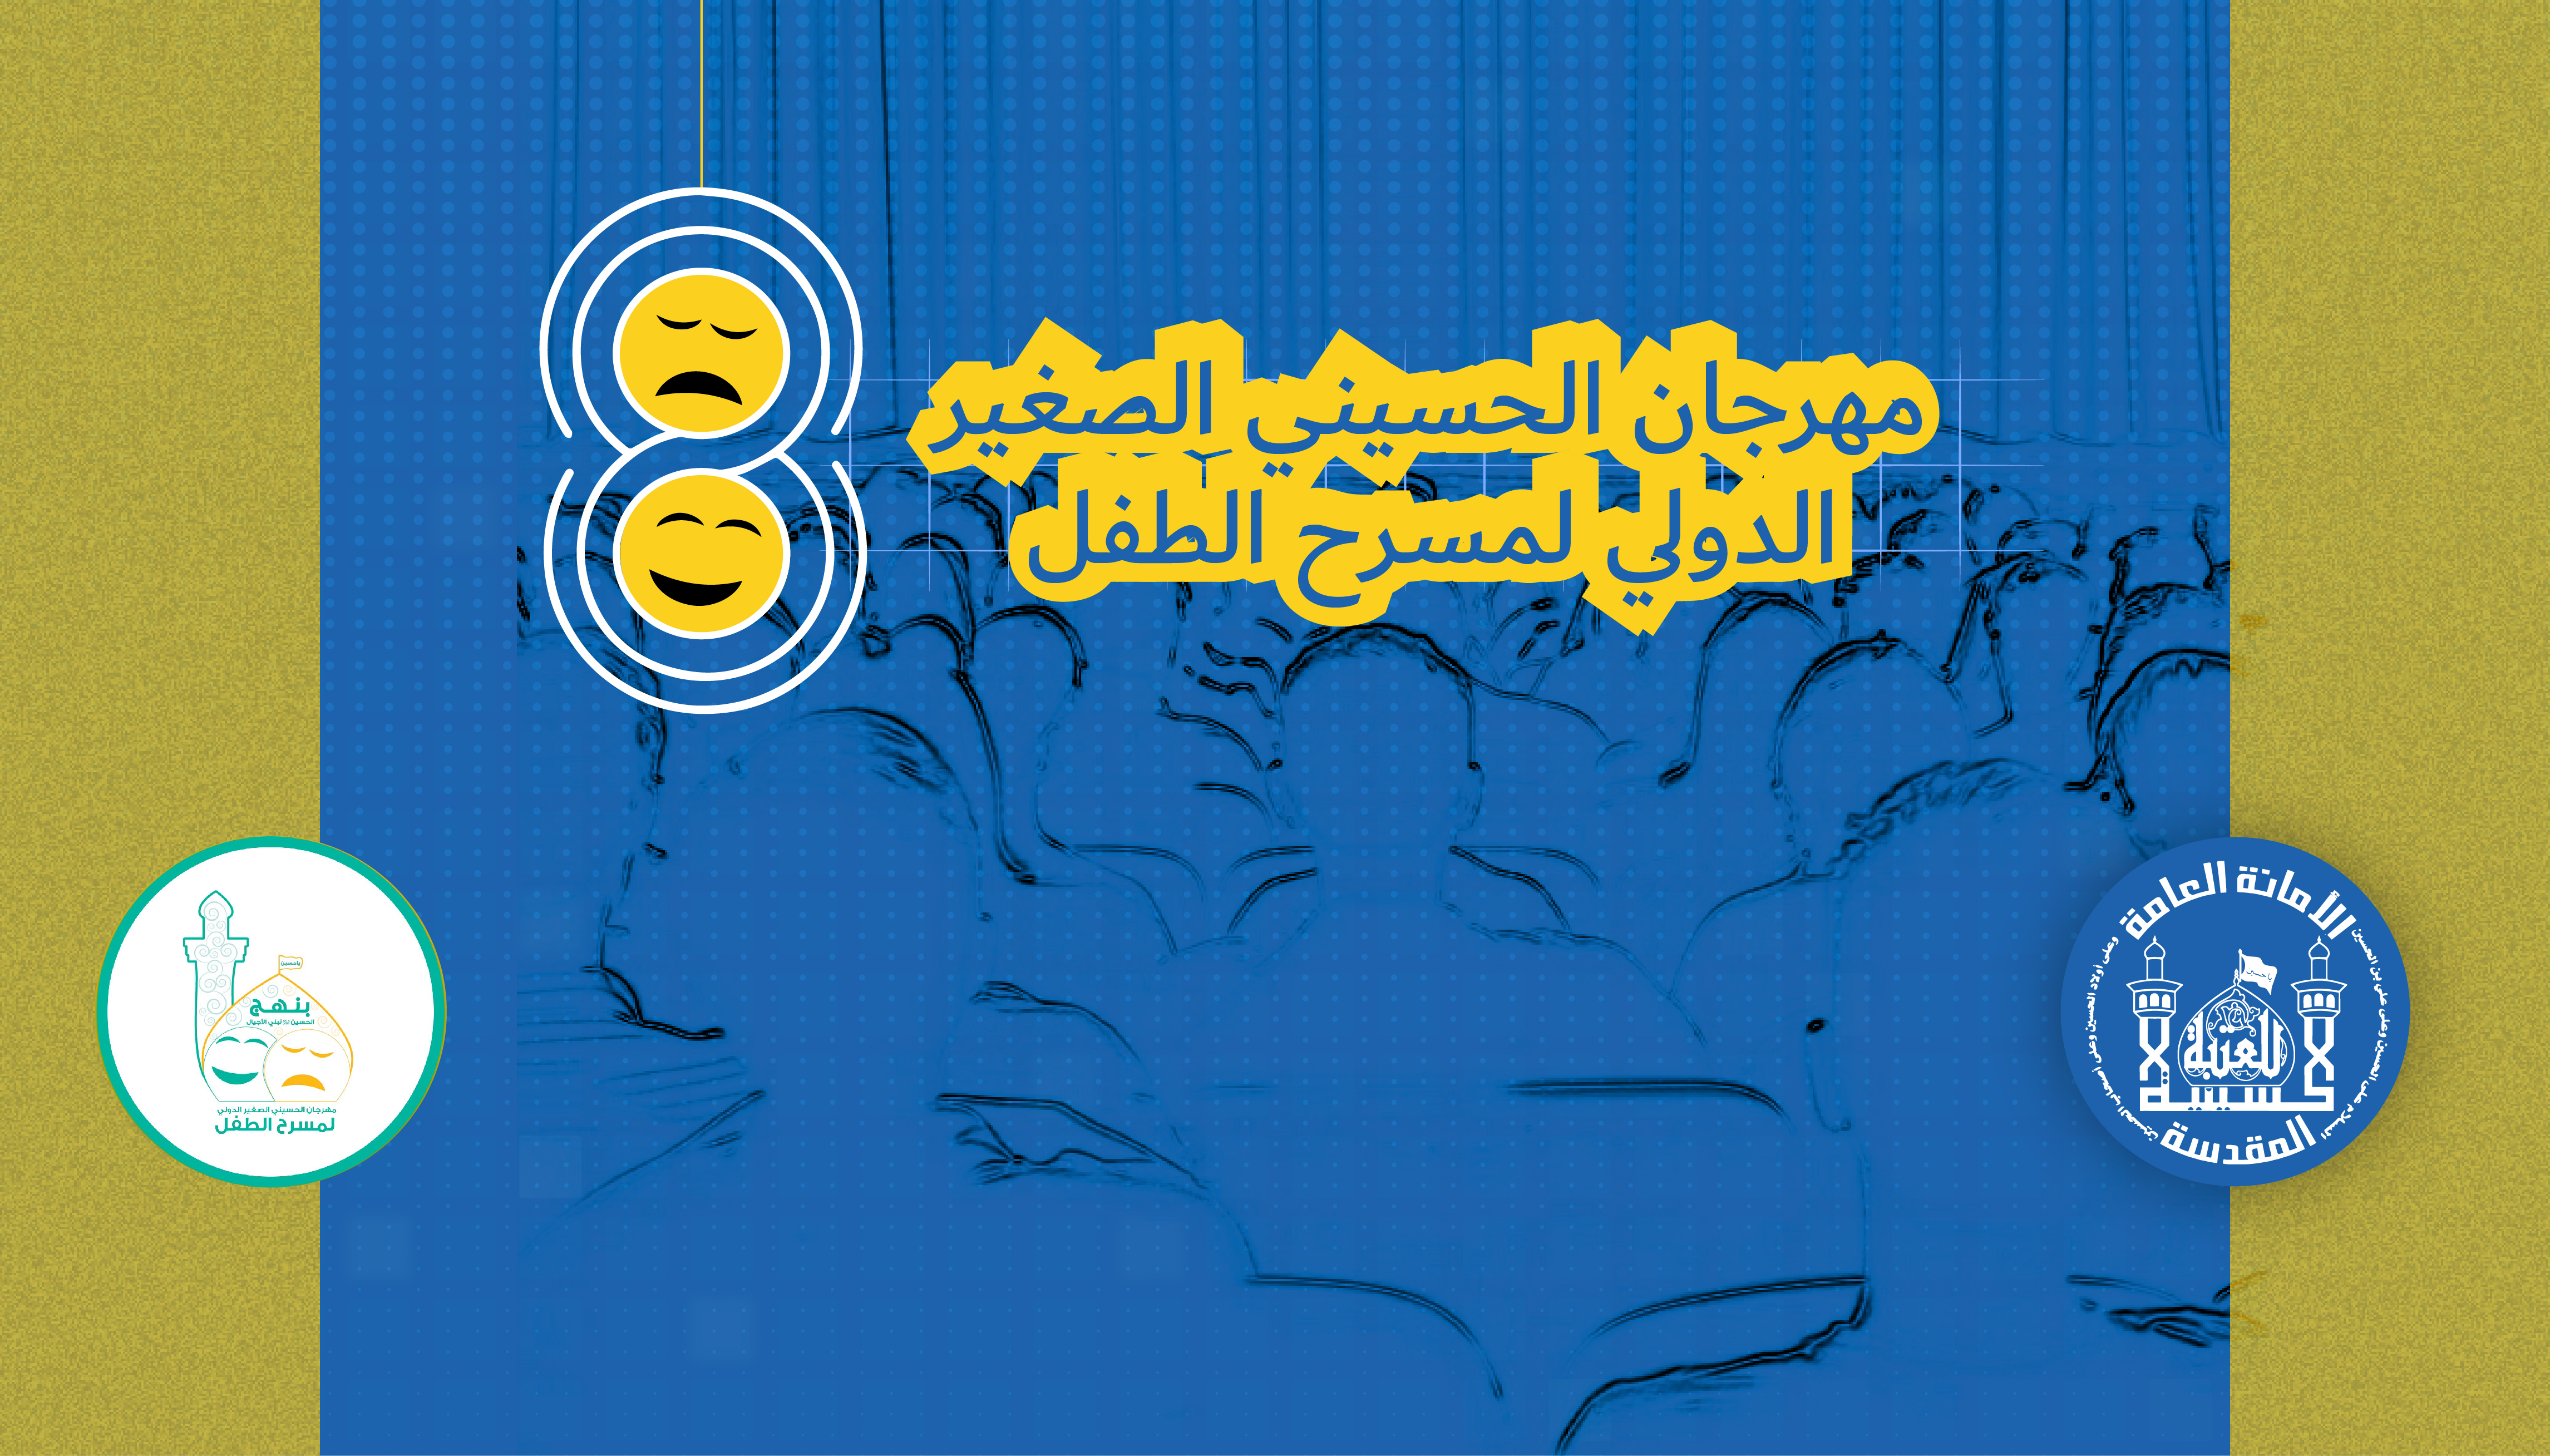 انطلاق مهرجان الحسيني الصغير للمسرح في كربلاء+ صور